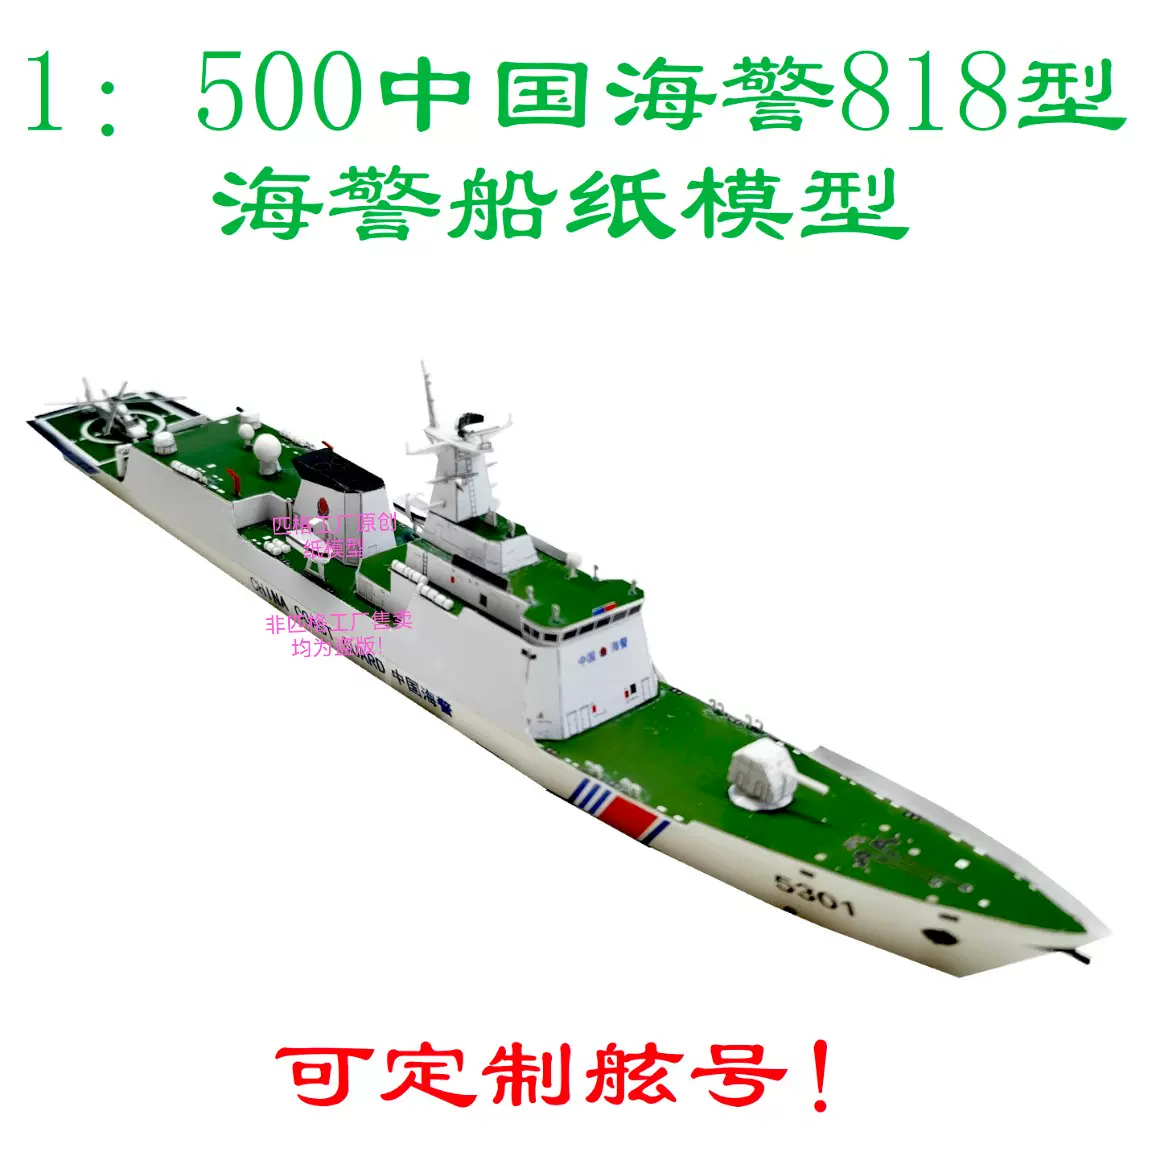 匹格工廠中國海警818型海警船模型3D紙模型DIY海軍軍艦海警船模型-Taobao